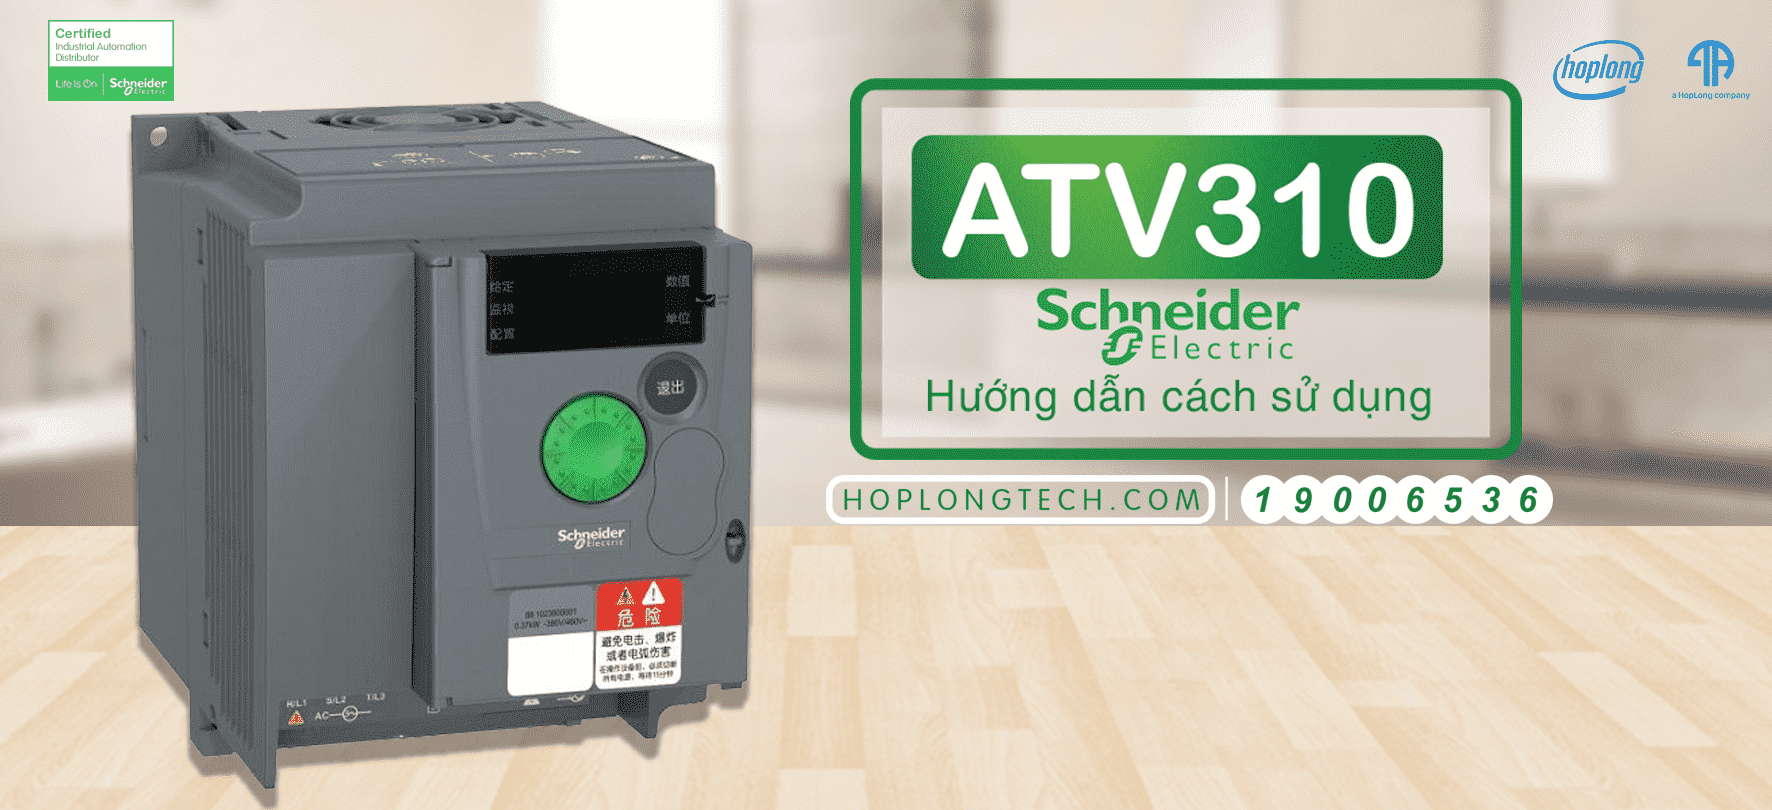 Hướng dẫn chi tiết cách sử dụng biến tần ATV310 Schneider